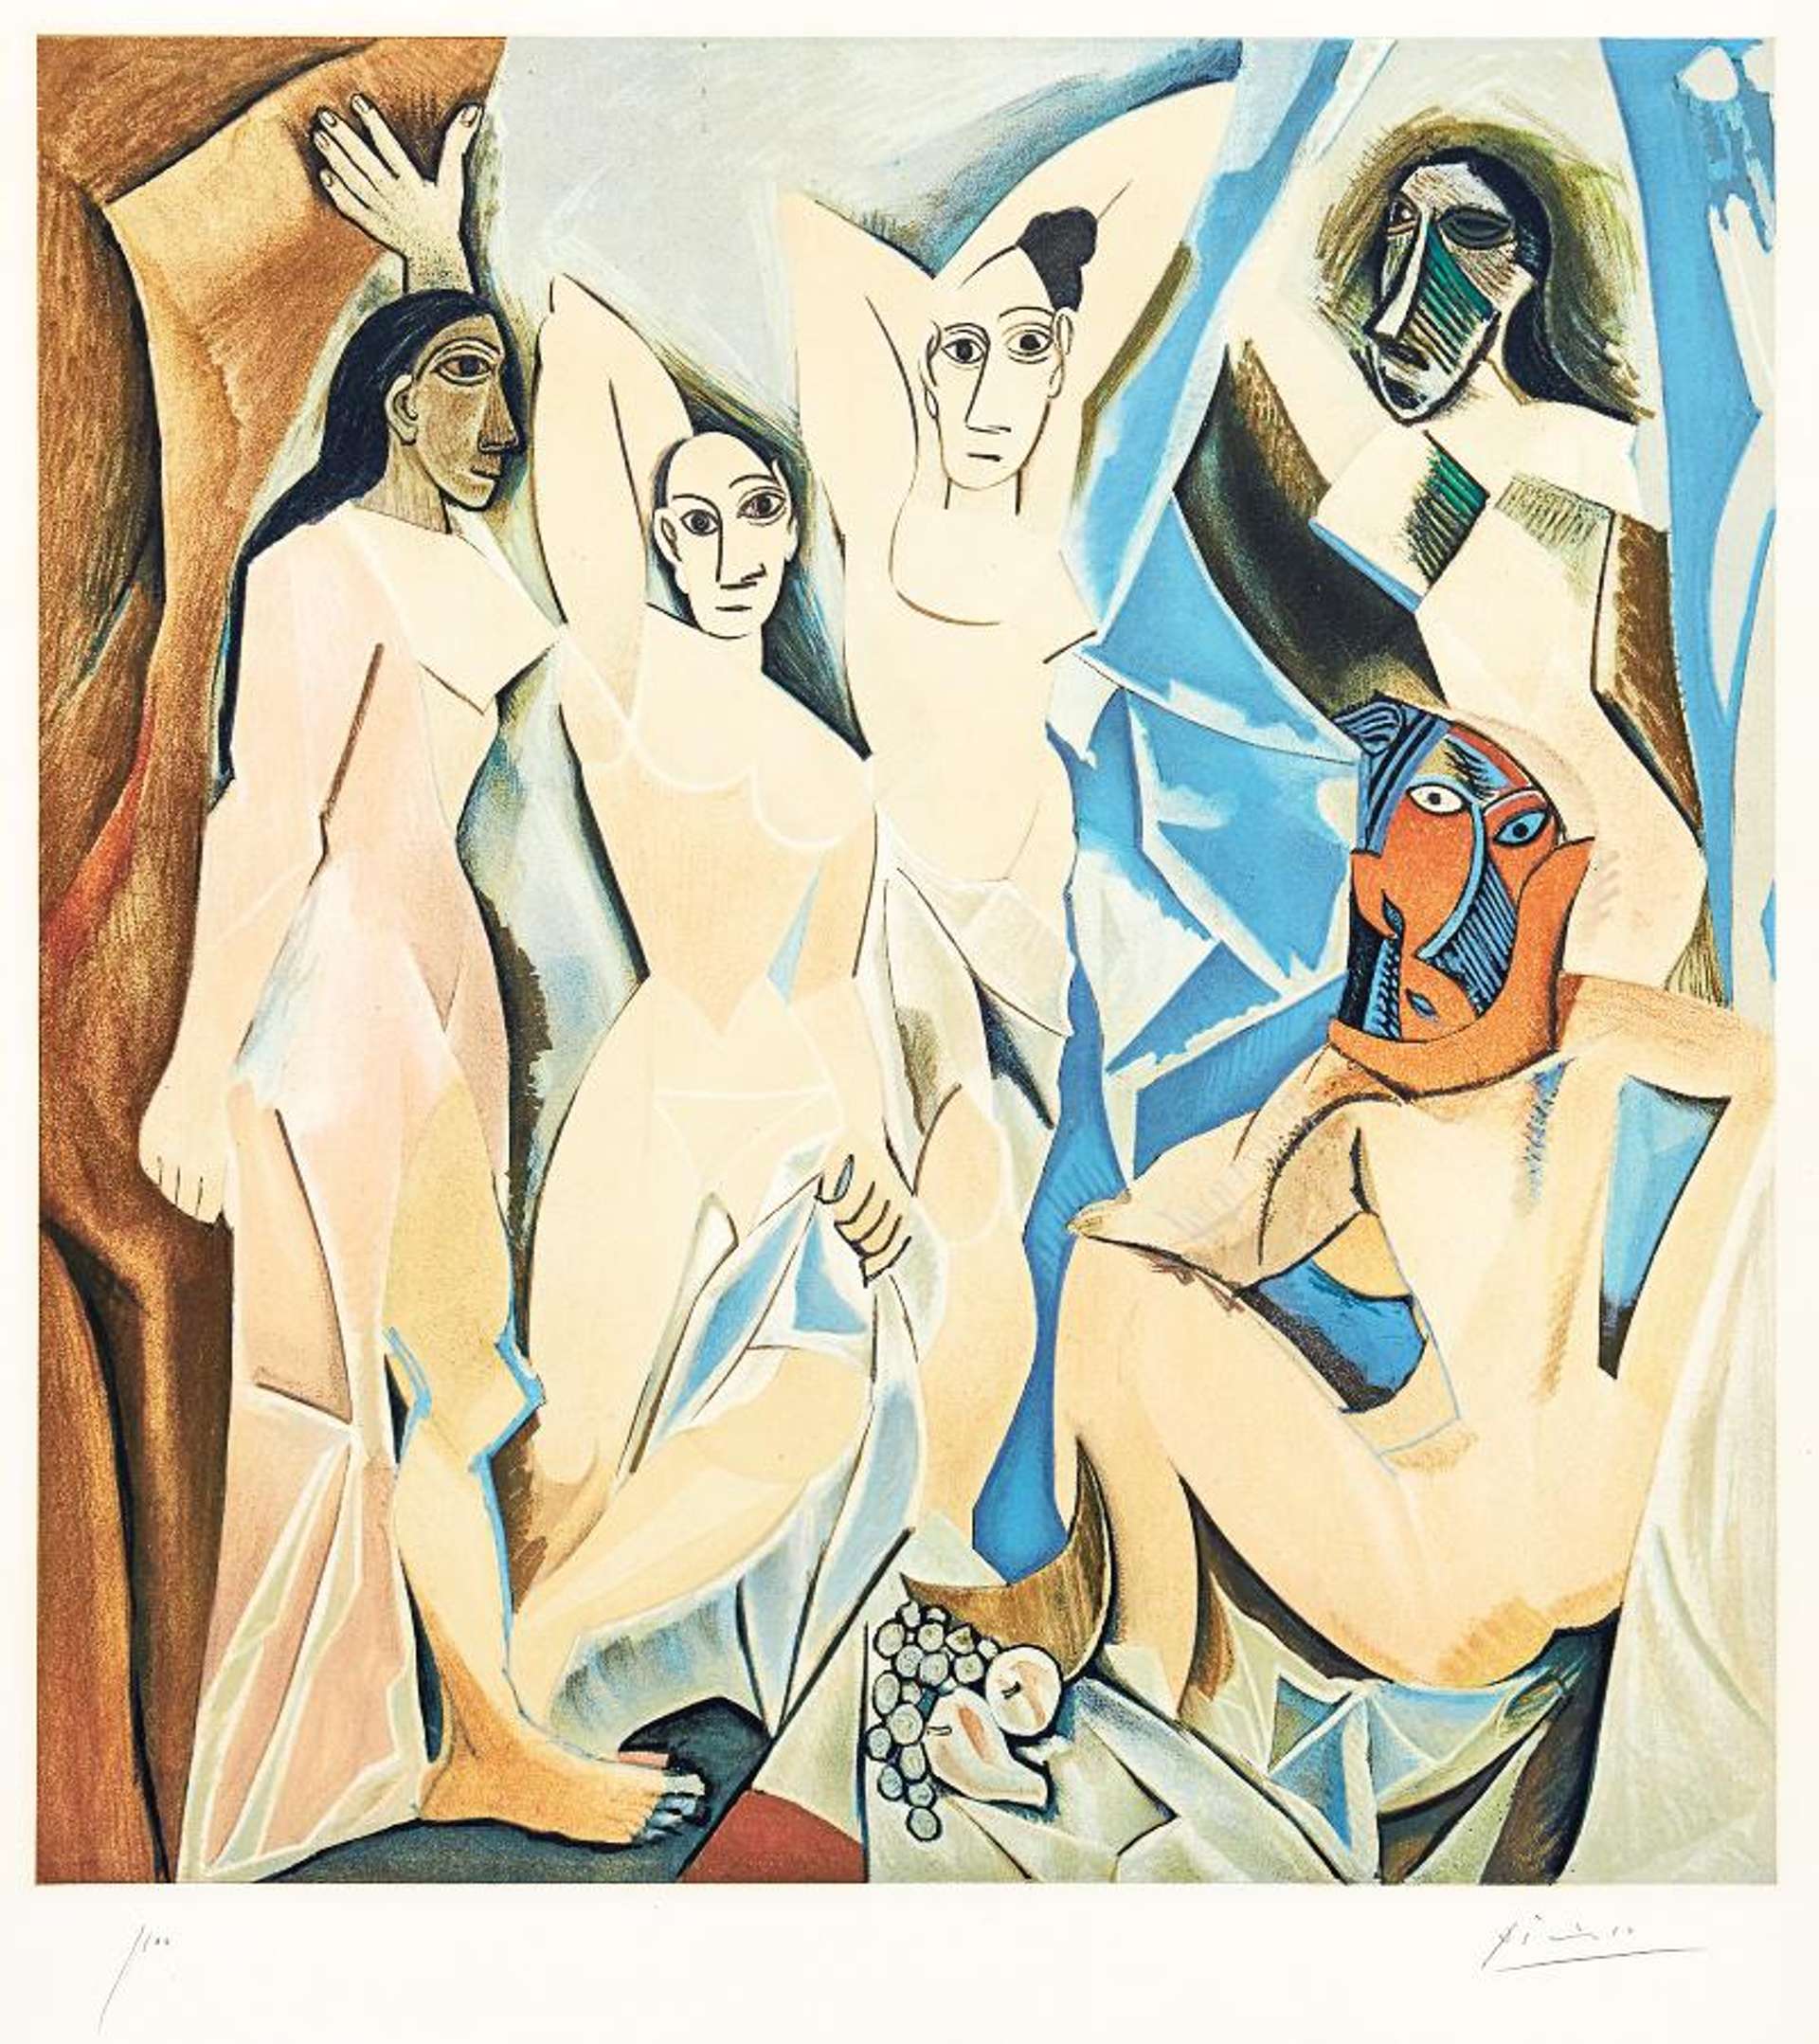 Les Demoiselles Avignon - Signed Print by Pablo Picasso 1955 - MyArtBroker